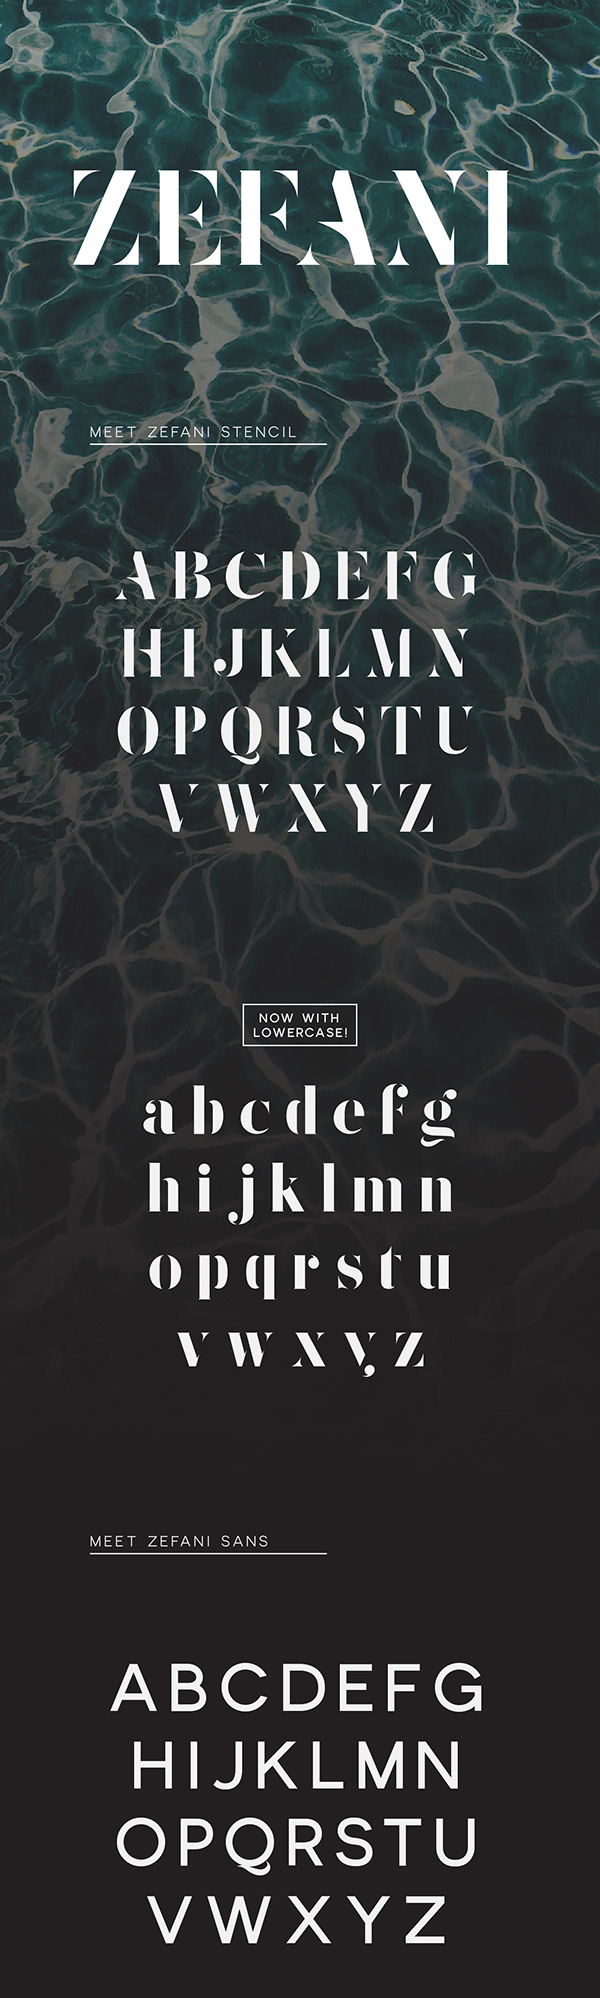 一些令人震撼的时尚设计字体打包下载（2015年12月）Zefani-Free-Typeface-be